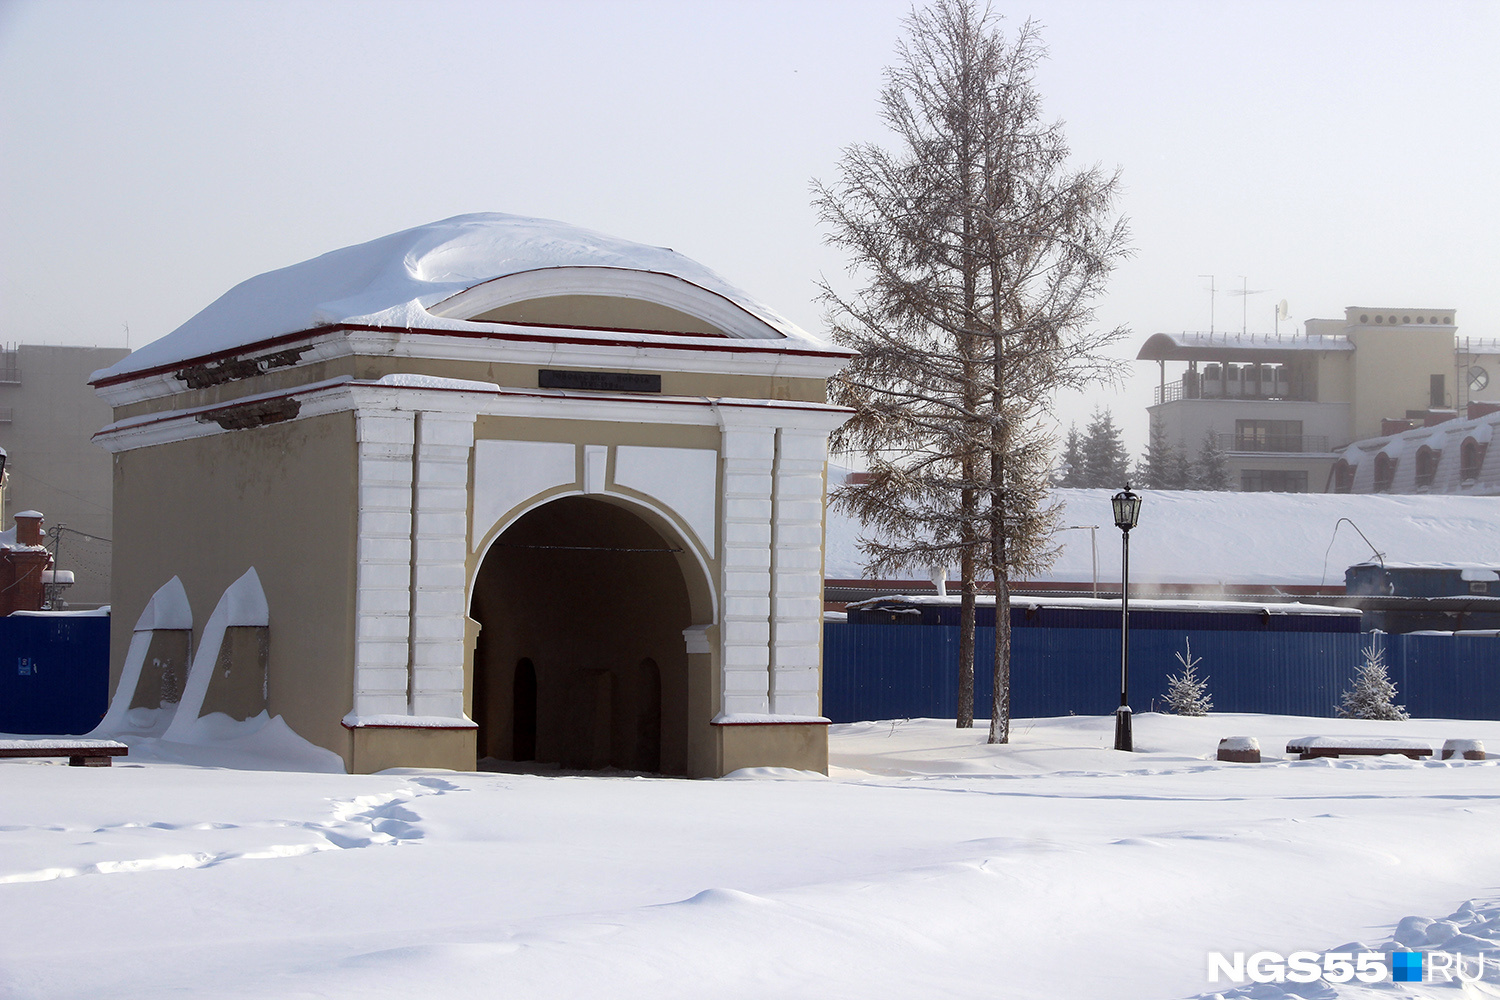 Через Тобольские ворота Достоевский выходил к Иртышу, где ему приходилось целыми днями работать